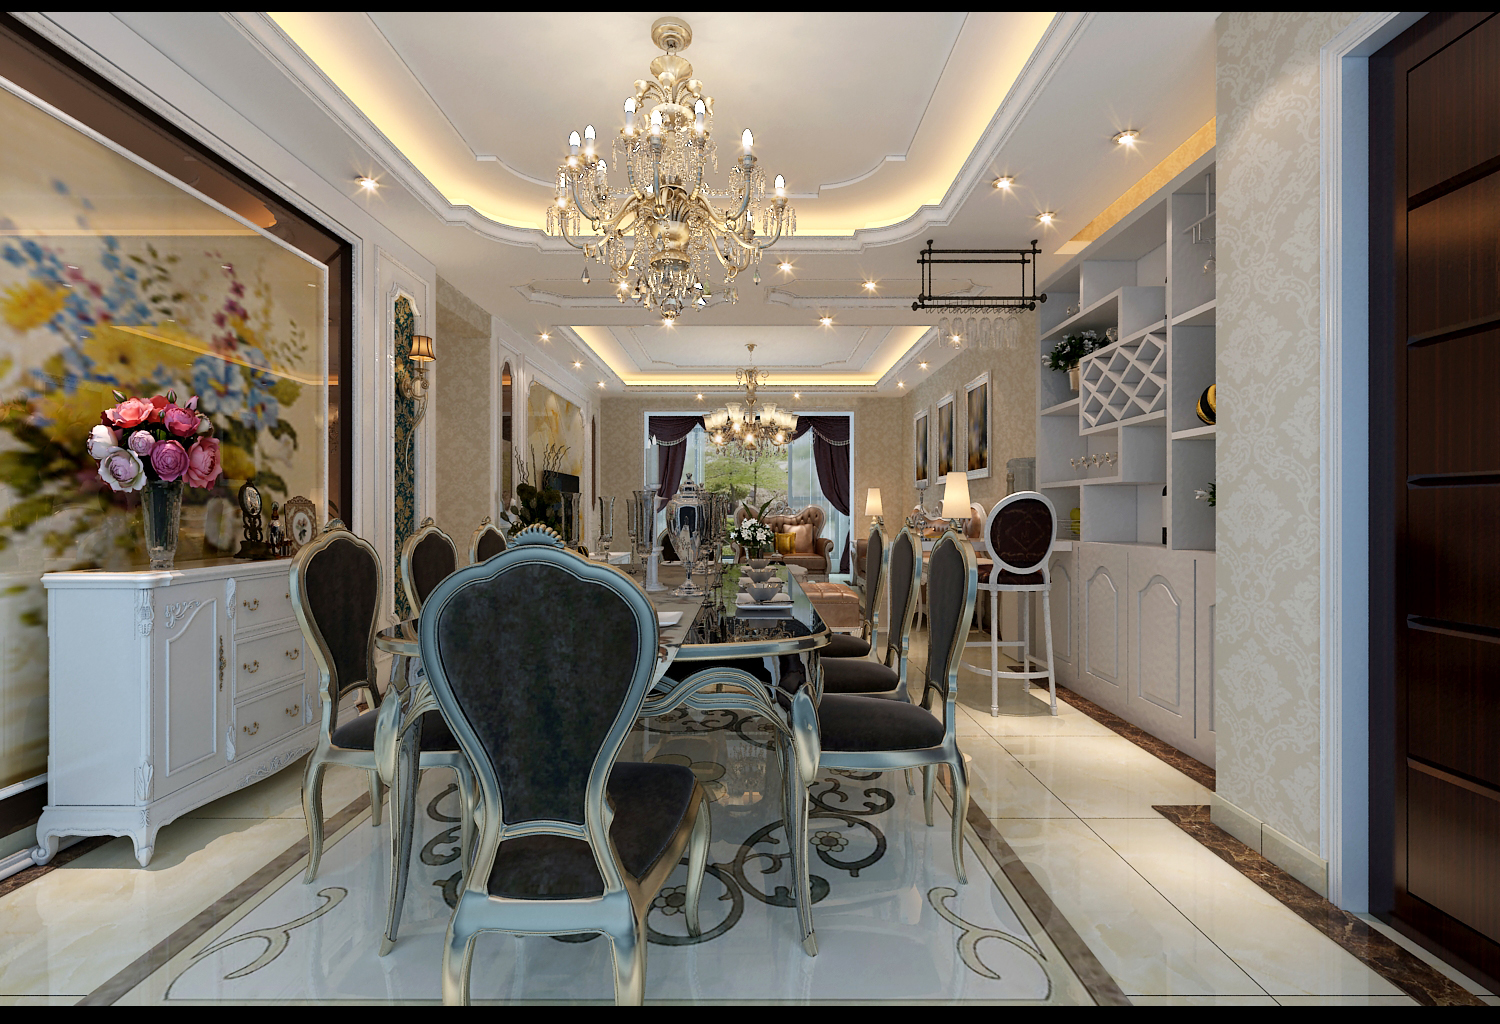 一个舒适、艺术、有格调的餐厅设计，能为家居环境增色不少。本案餐厅整体布局强调简单统一，墙地面设计与客厅相呼应，给人以温馨浪漫之感。